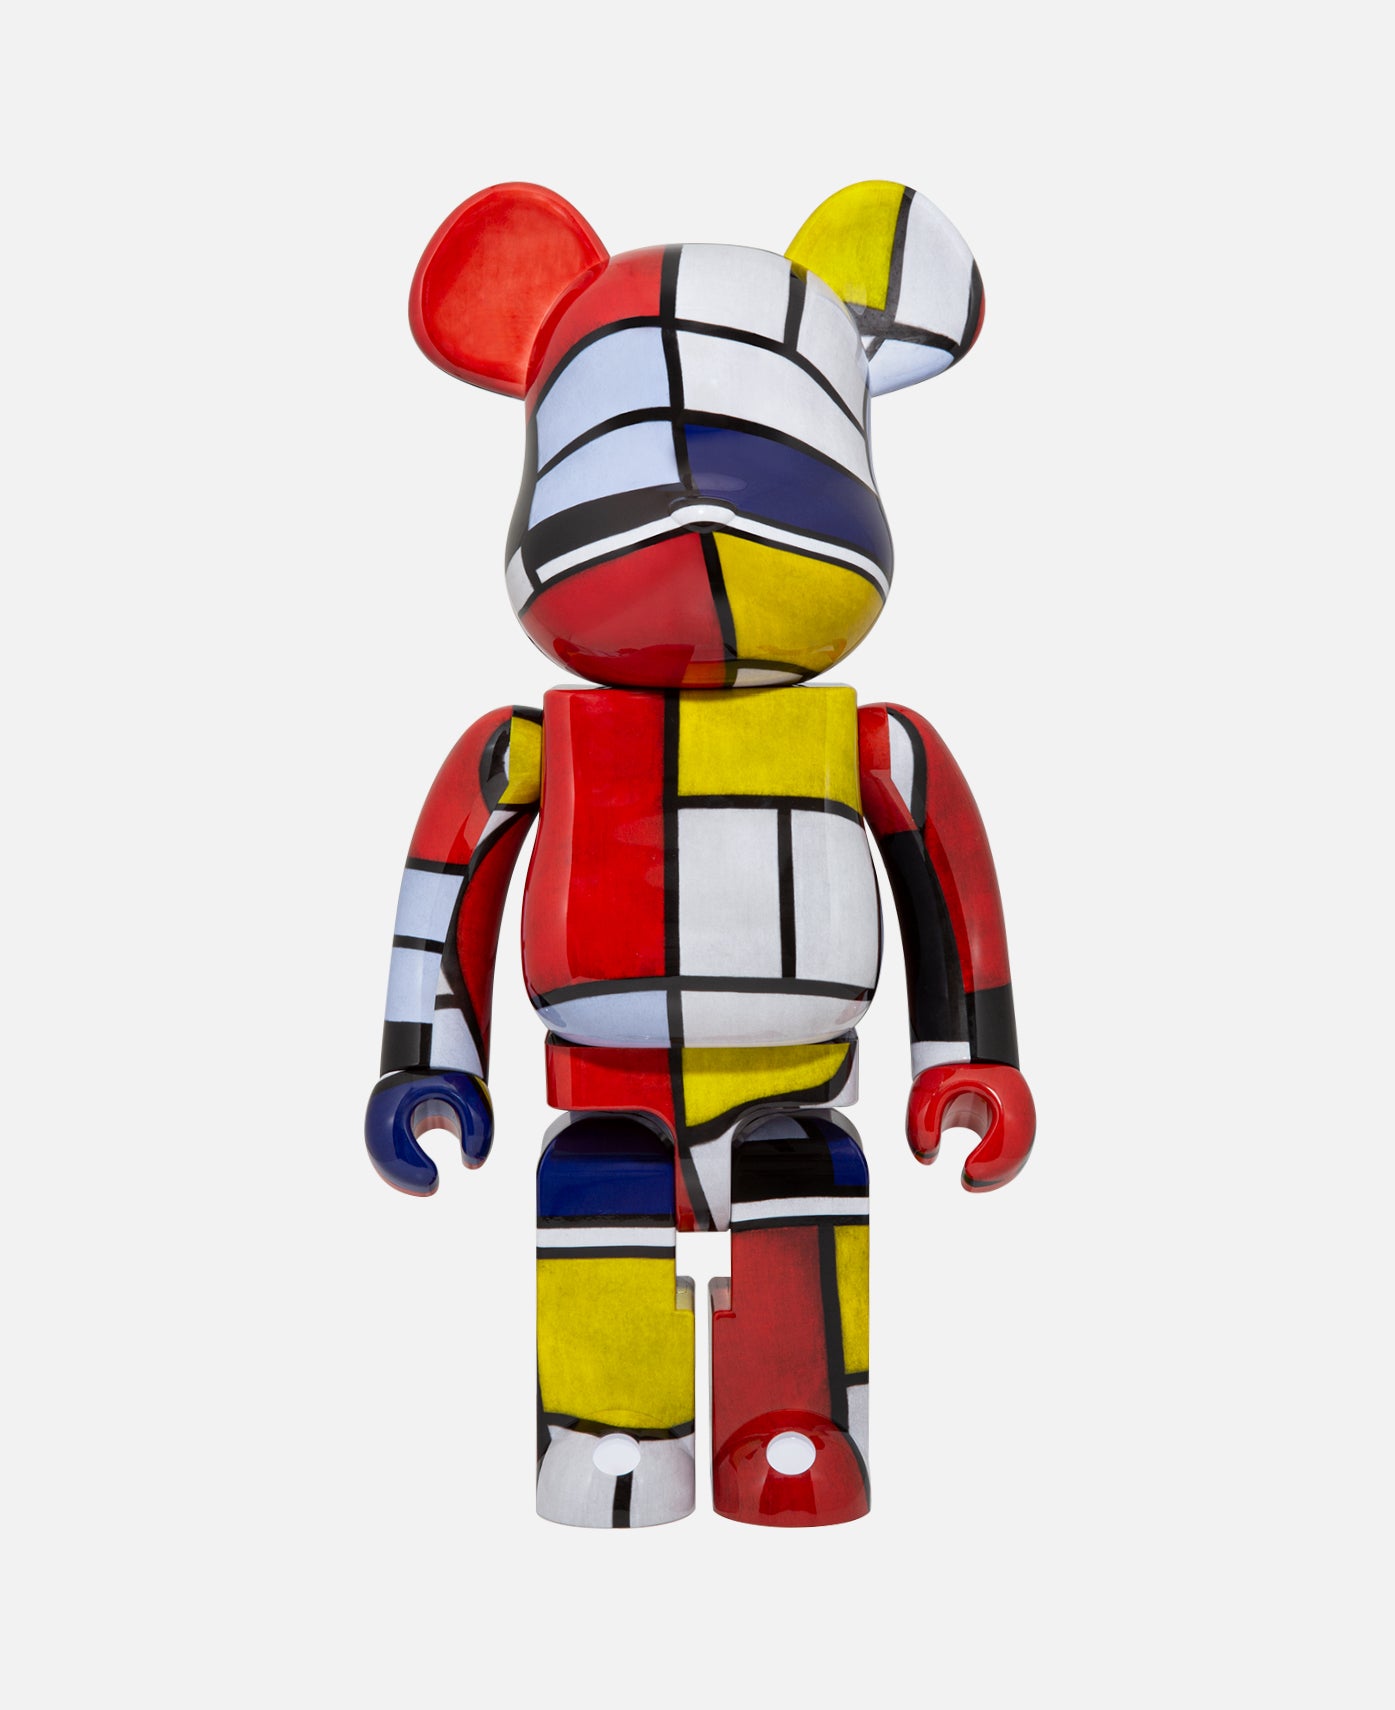 BE@RBRICK Piet Mondrian 1000% モンドリアン - フィギュア